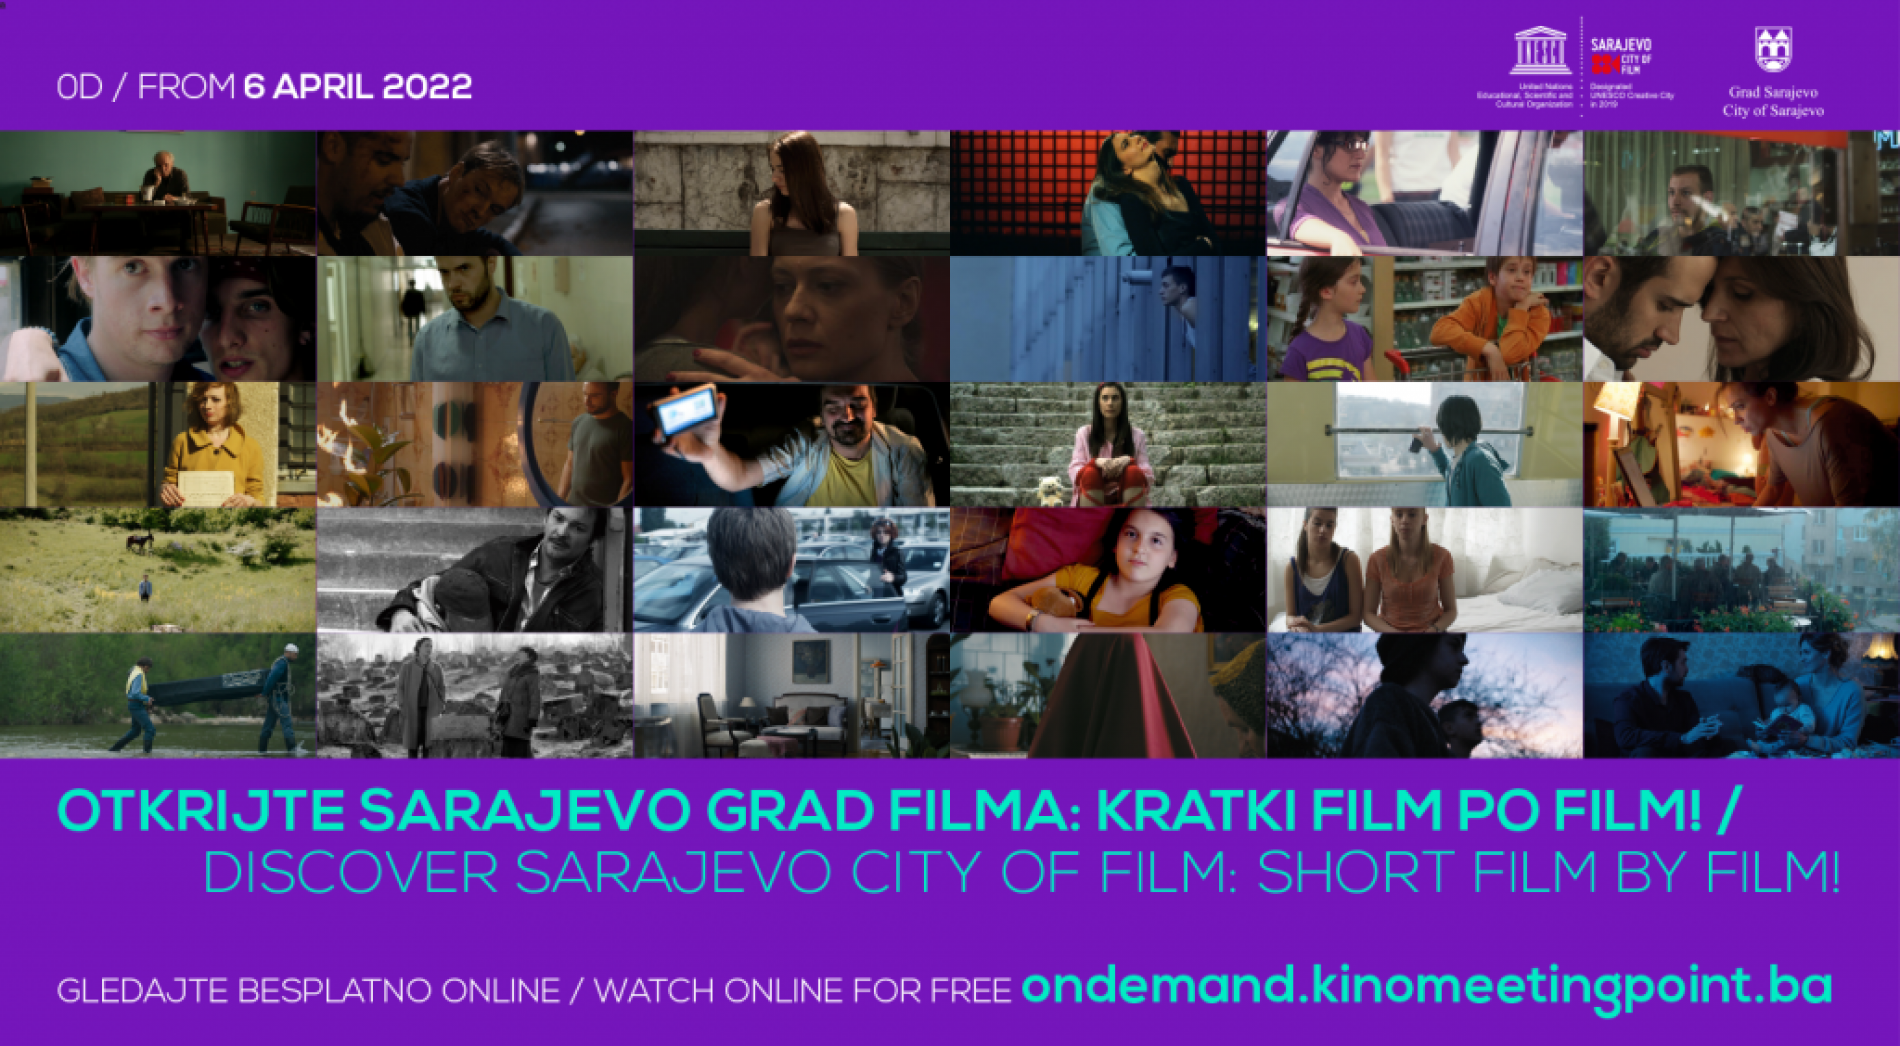 Novi filmovi snimljeni u Sarajevu dostupni online besplatno